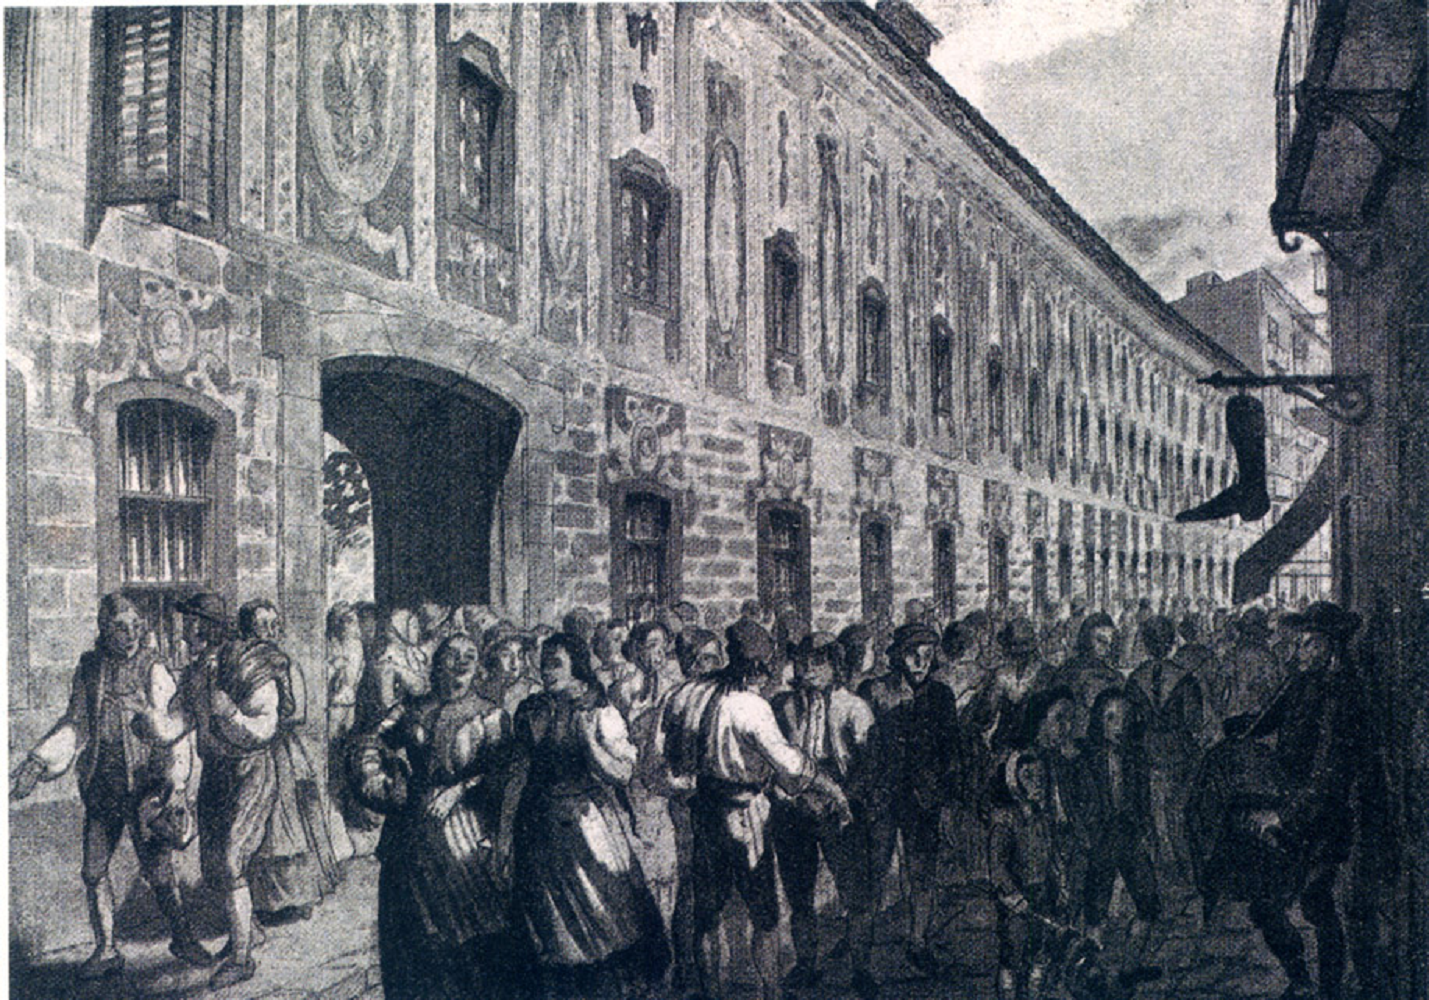 Clases populares catalanas a la salida de la fábrica (siglo XVIII). Fuente Enciclopedia